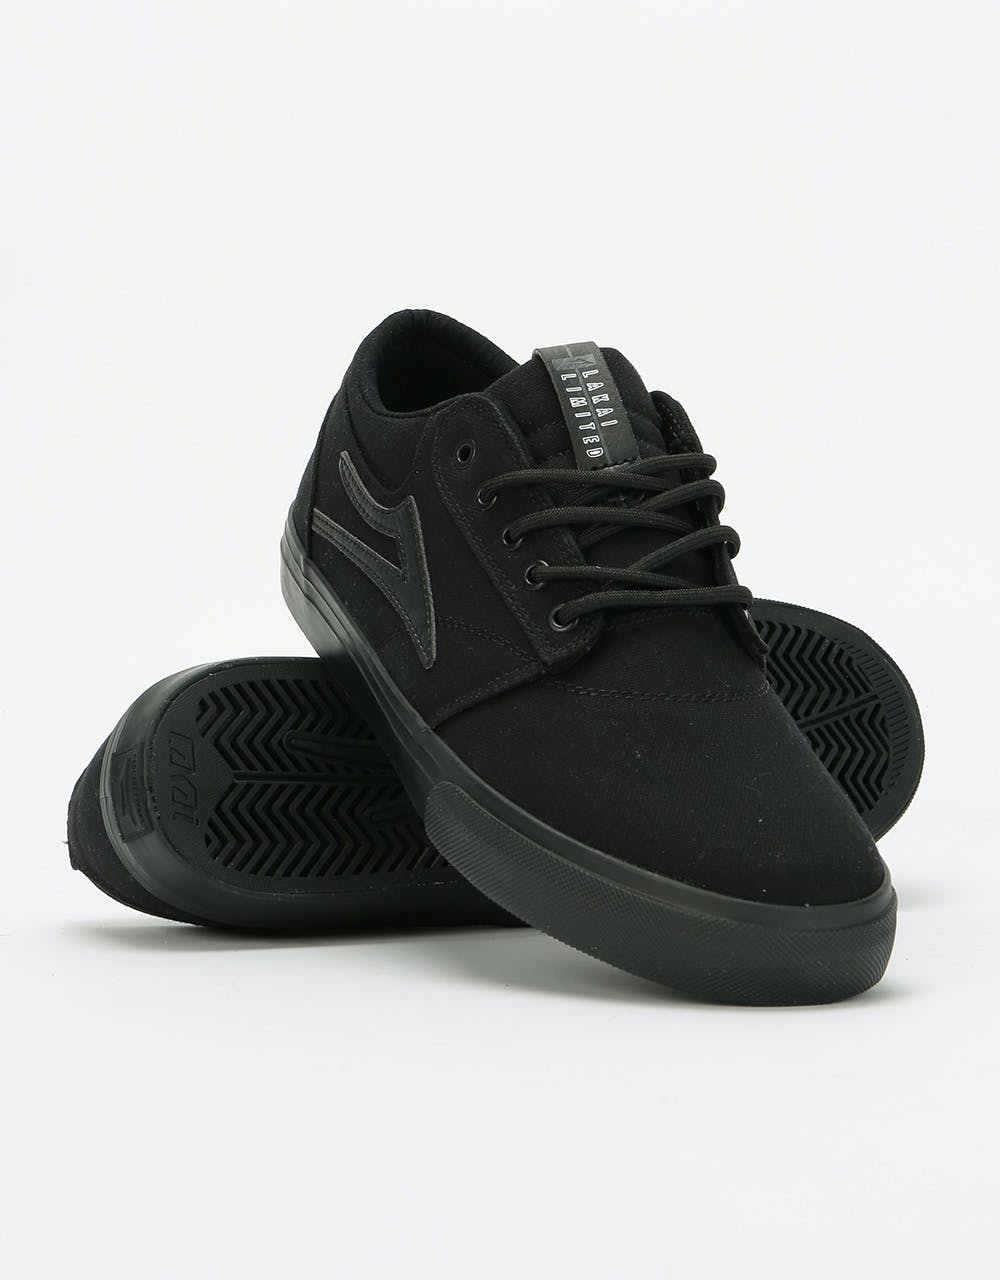 Lakai Griffin Textile Skate Shoes - Black/Black Canvas